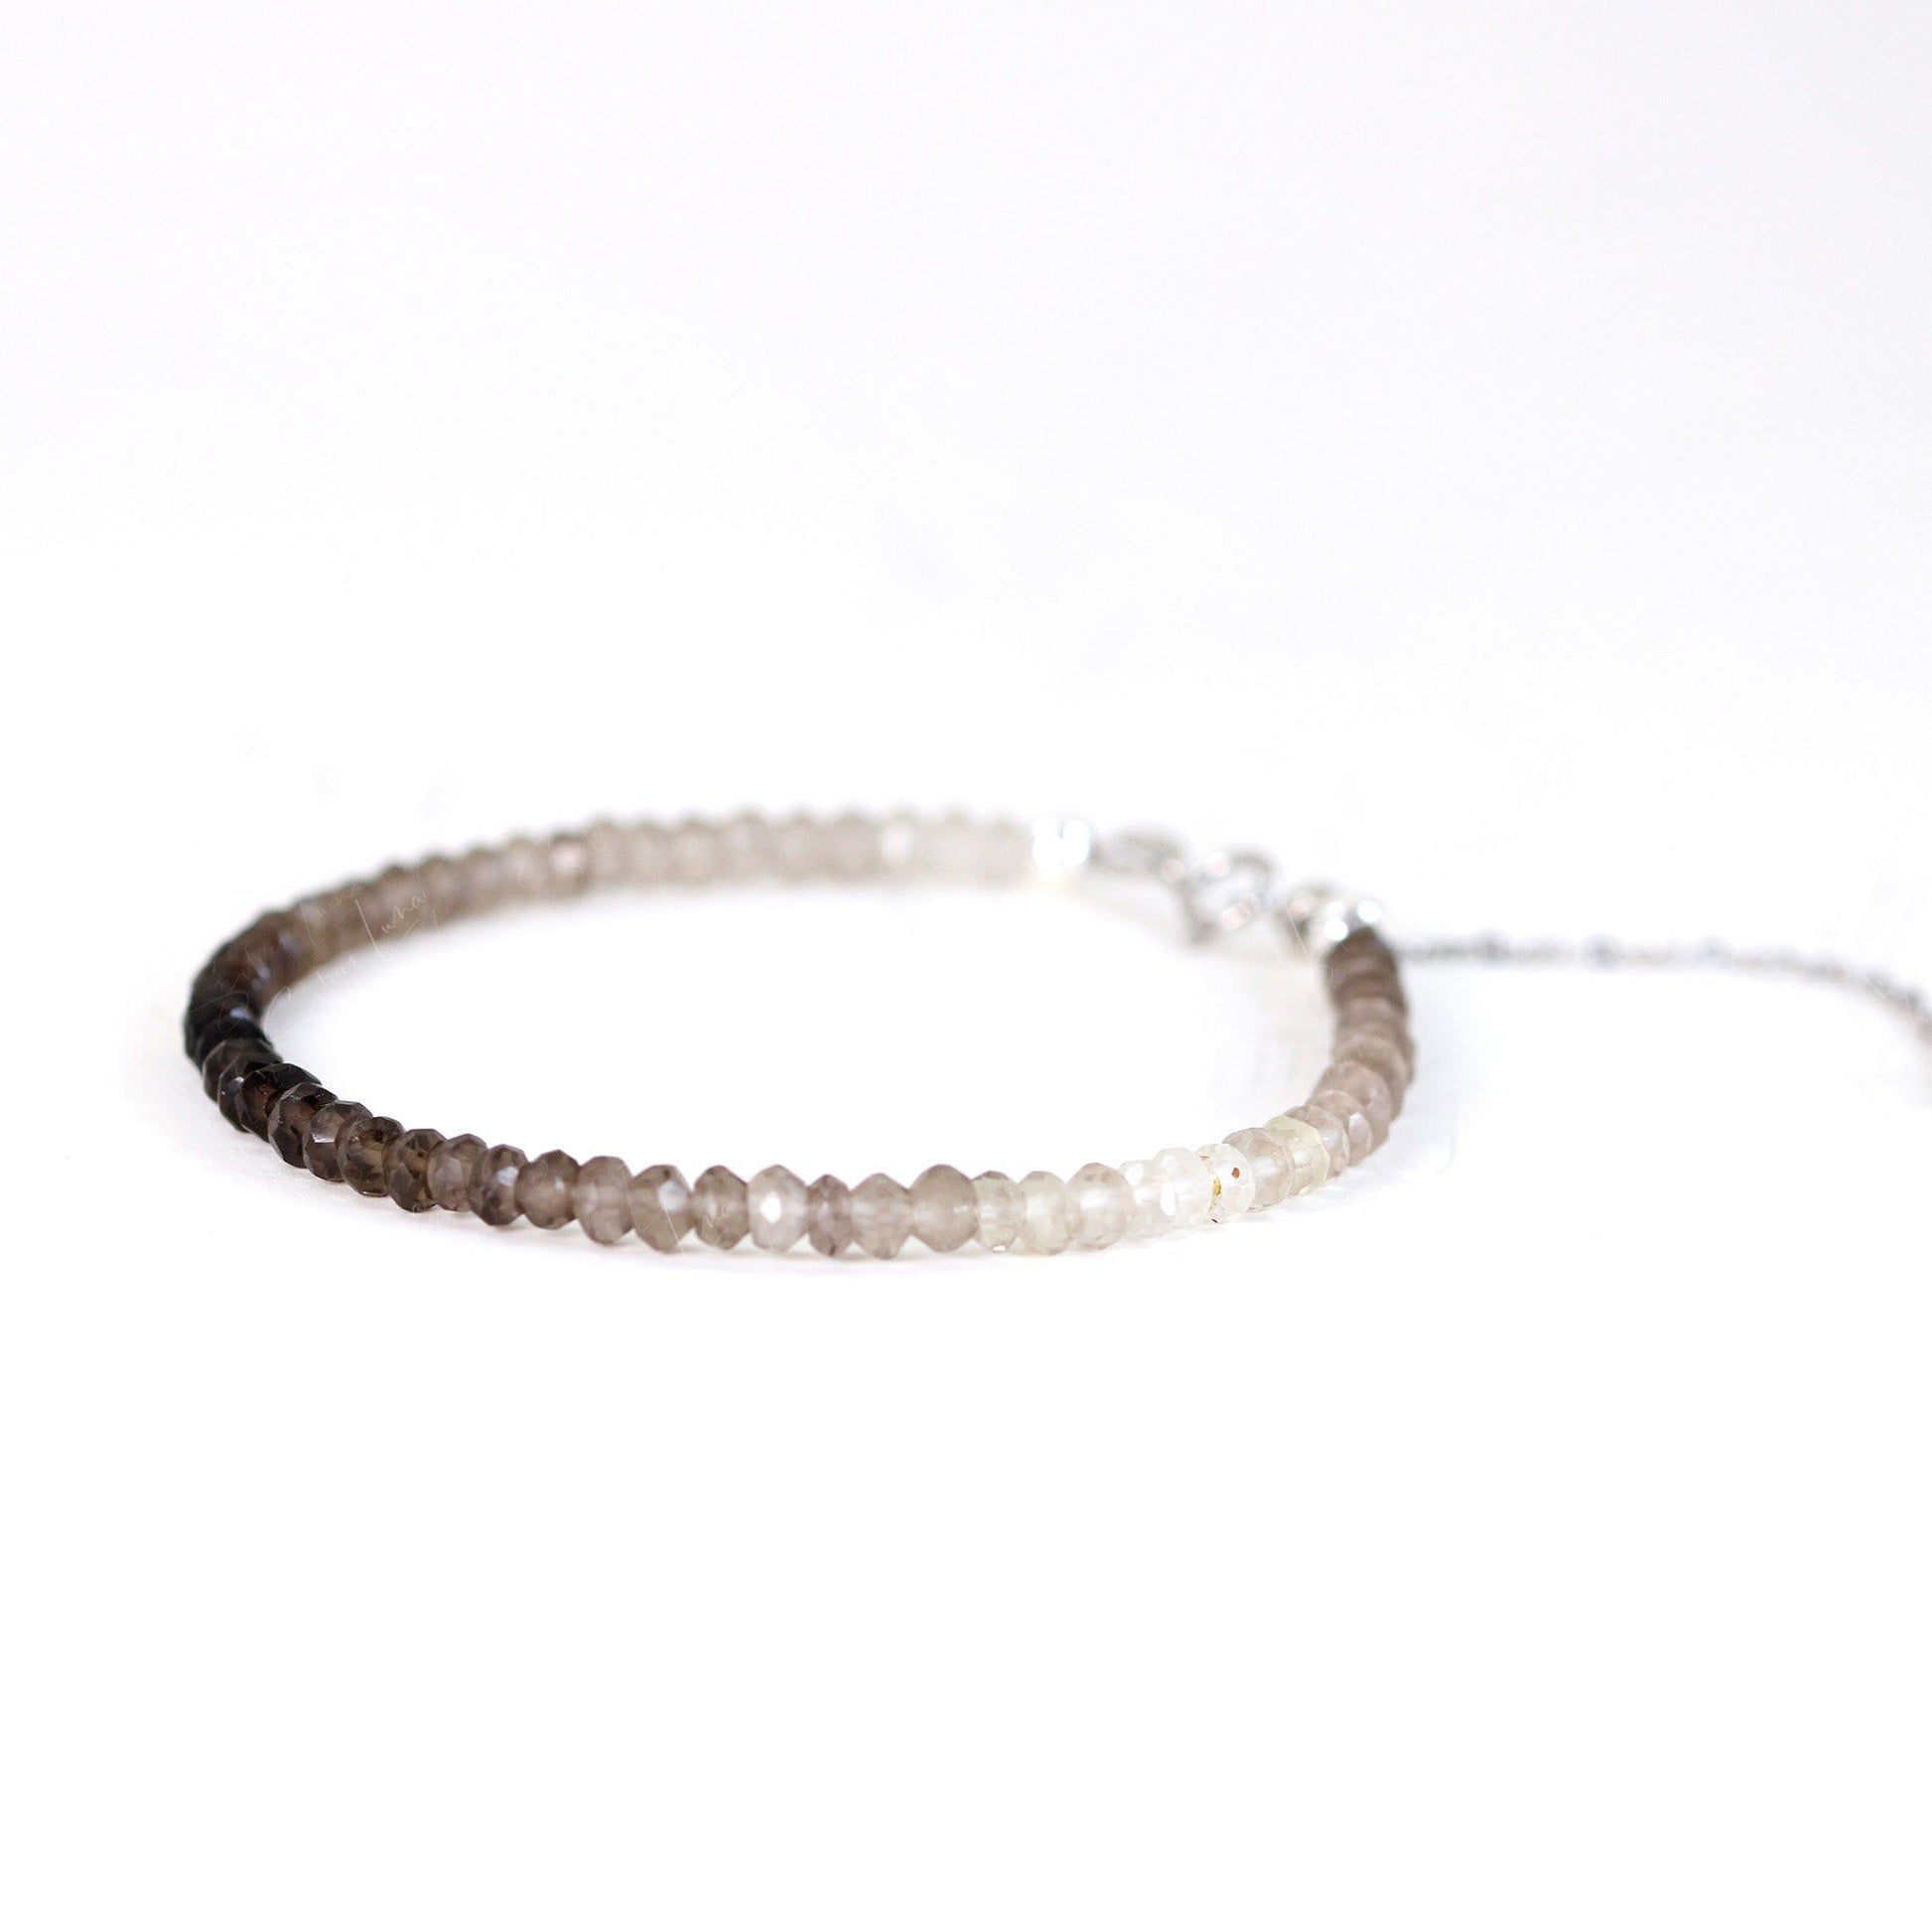 ombre smoky quartz beaded bracelet